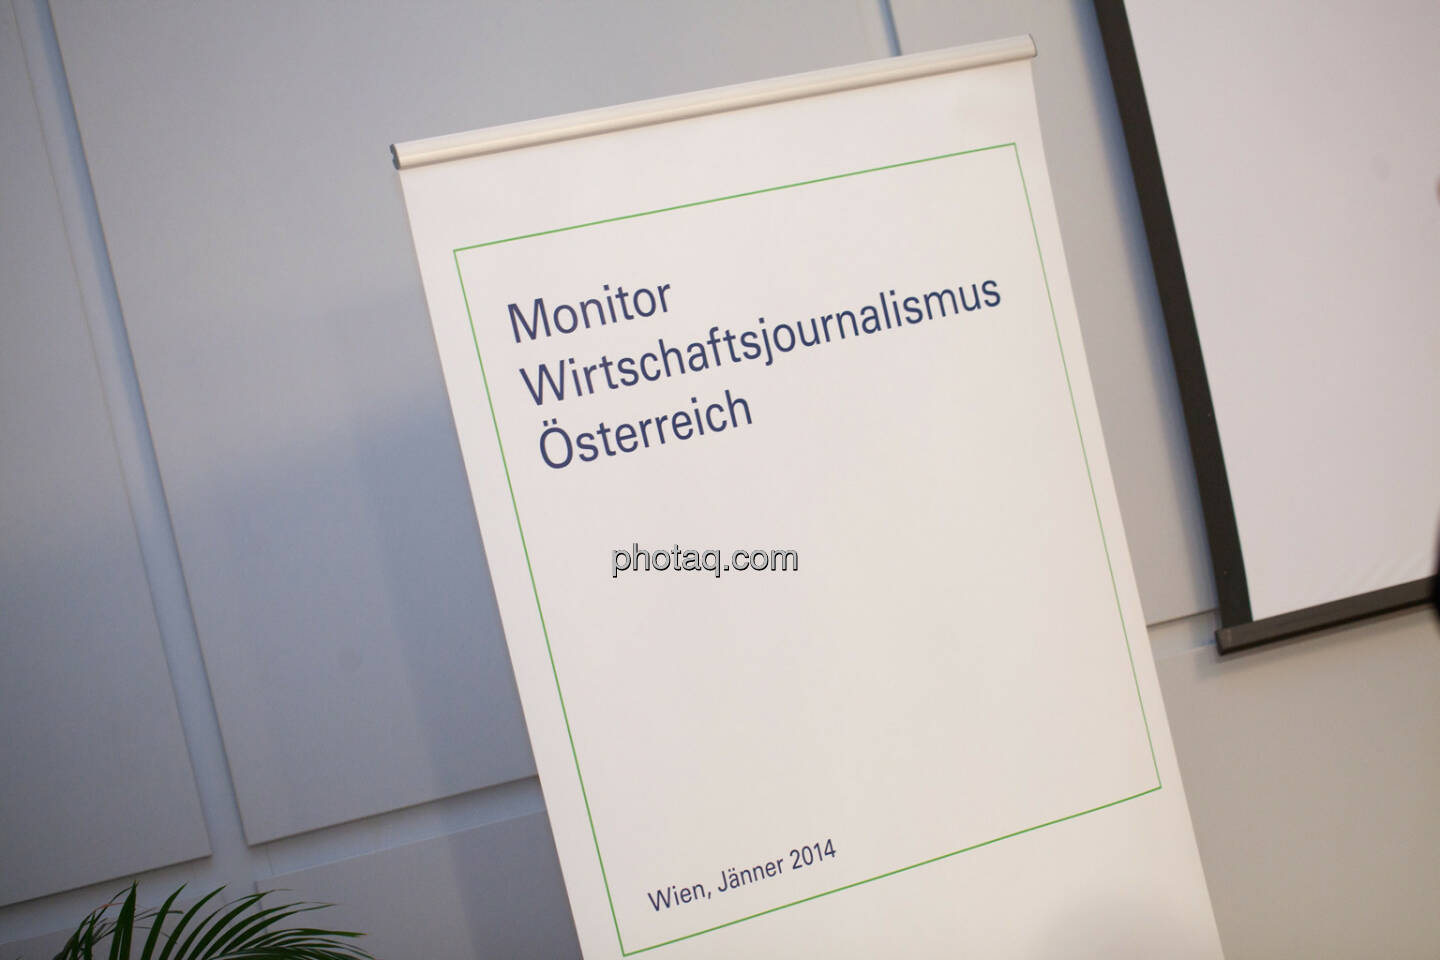 Monitor Wirtschaftsjournalismus Österreich